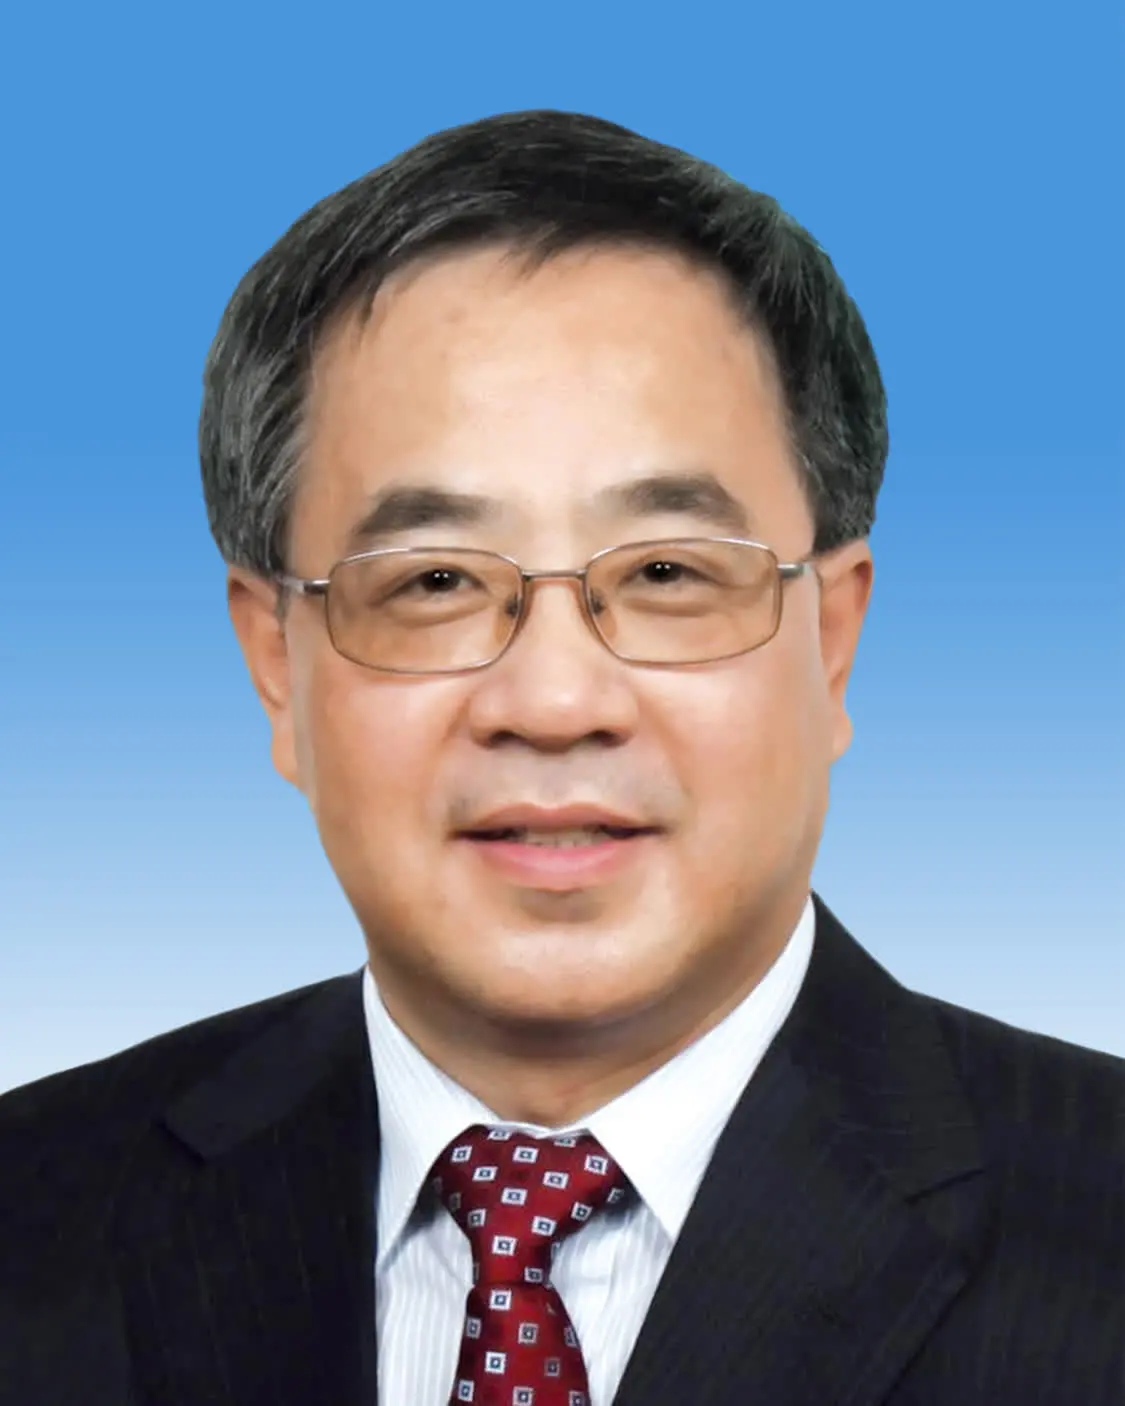 中国人民政治协商会议第十四届全国委员会副主席胡春华